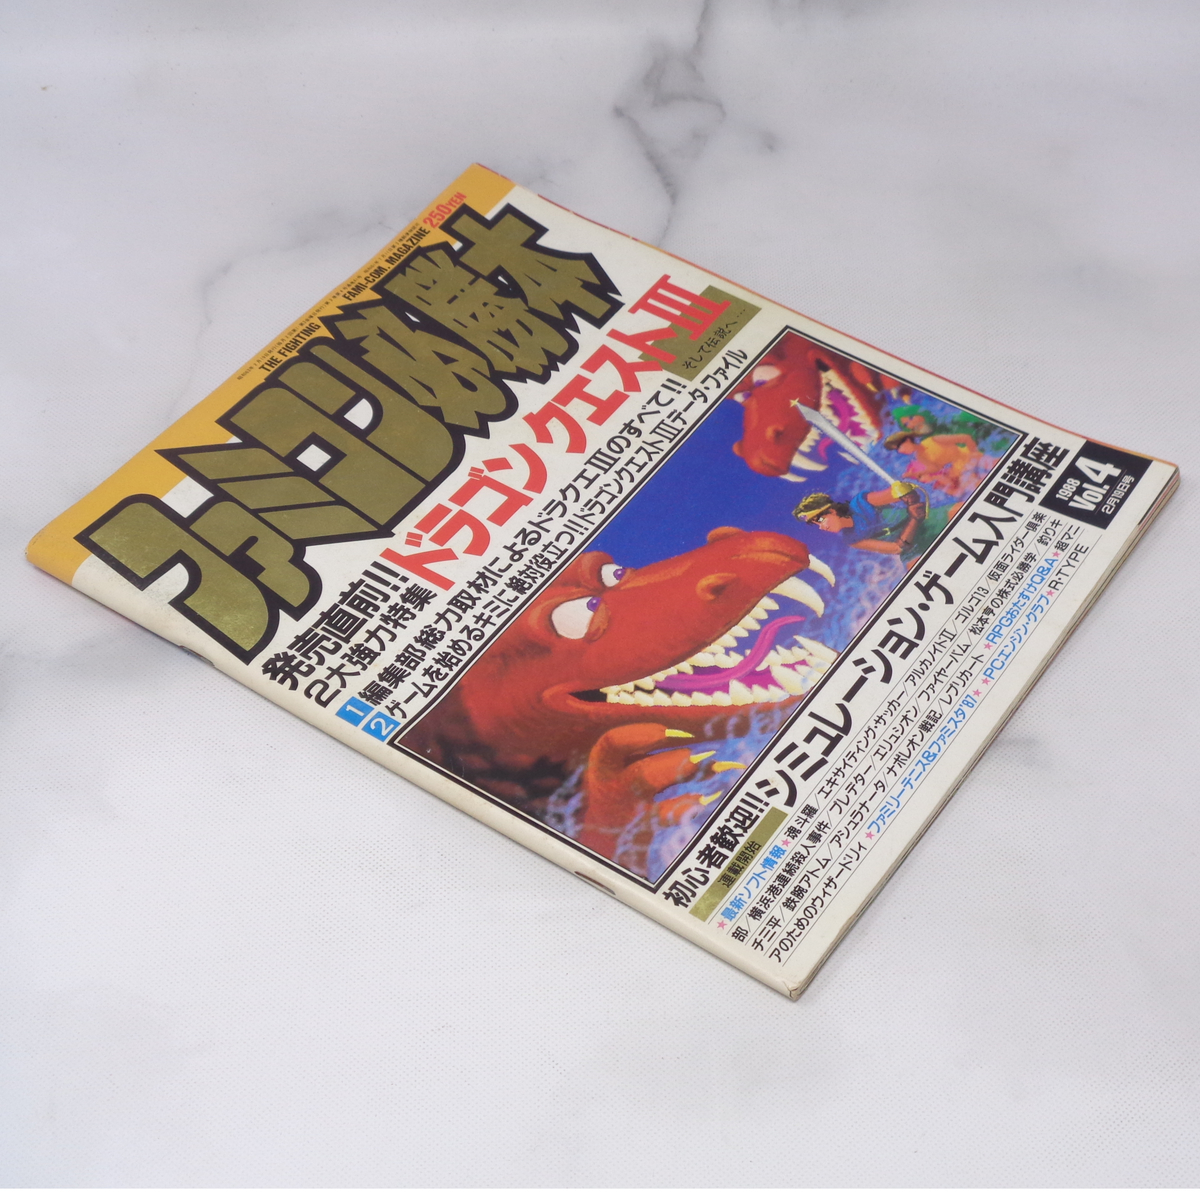 ファミコン必勝本 1988年2月19日号Vol.4 /ドラゴンクエスト3/シミュレーションゲーム入門講座/ゲーム雑誌[Free Shipping]